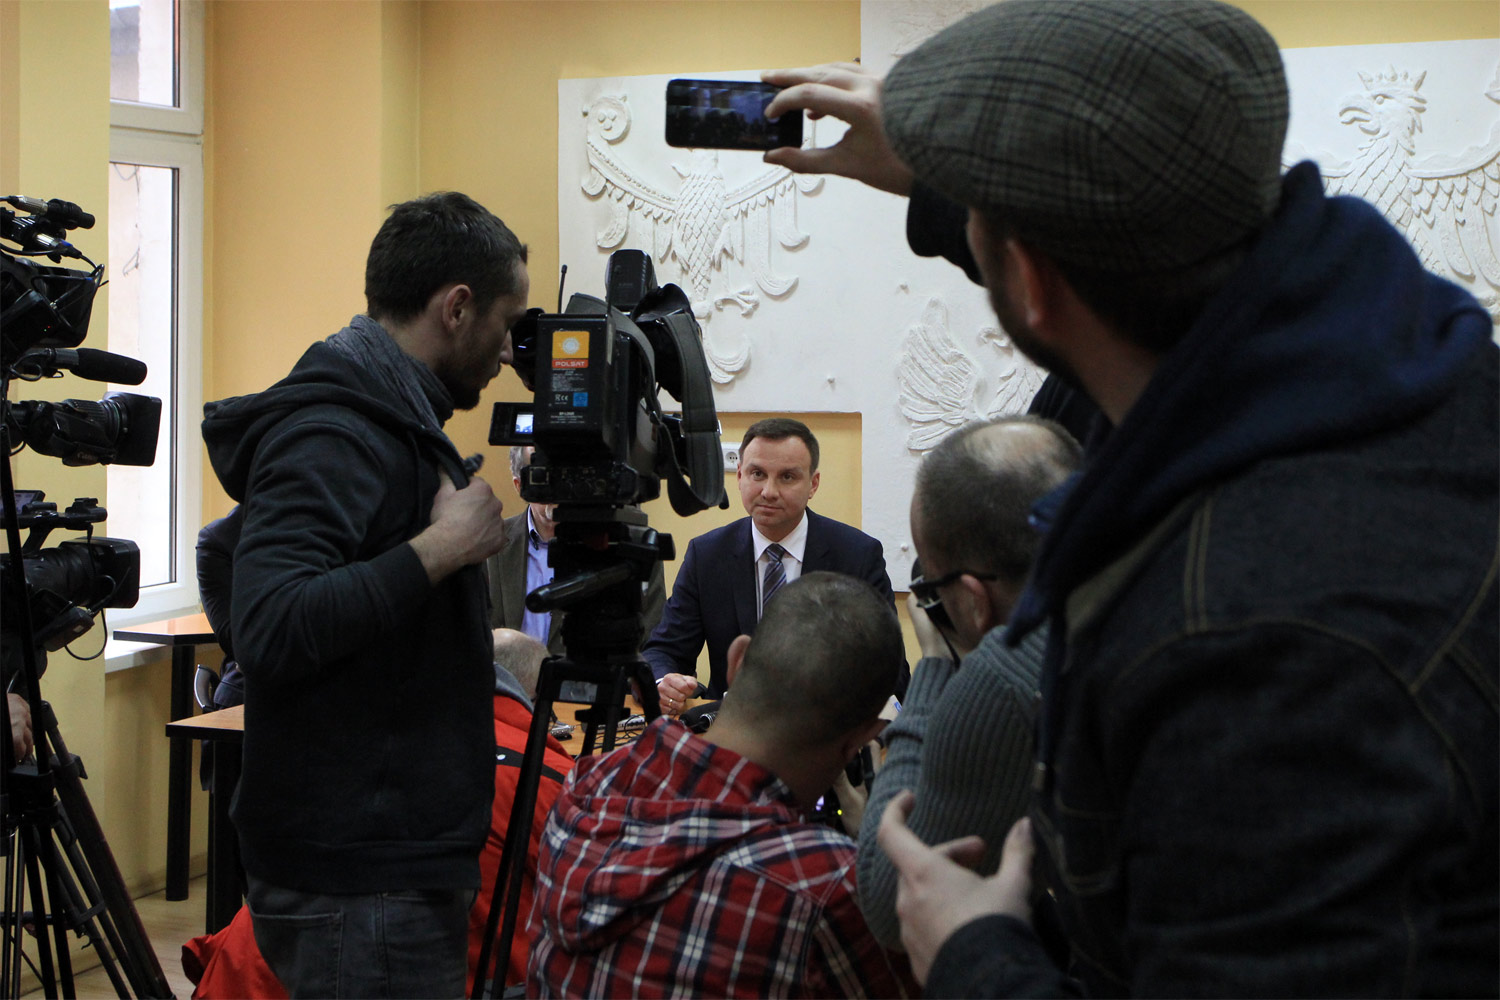 Andrzej Duda, kandydat na Prezydenta RP odwiedził Wałbrzych. W siedzibie NSZZ „Solidarność” spotkał się z dziennikarzami na konferencji prasowej, a następnie w Rynku z mieszkańcami miasta. Wałbrzych kwiecień 2015, fot. Ryszard Wyszyński